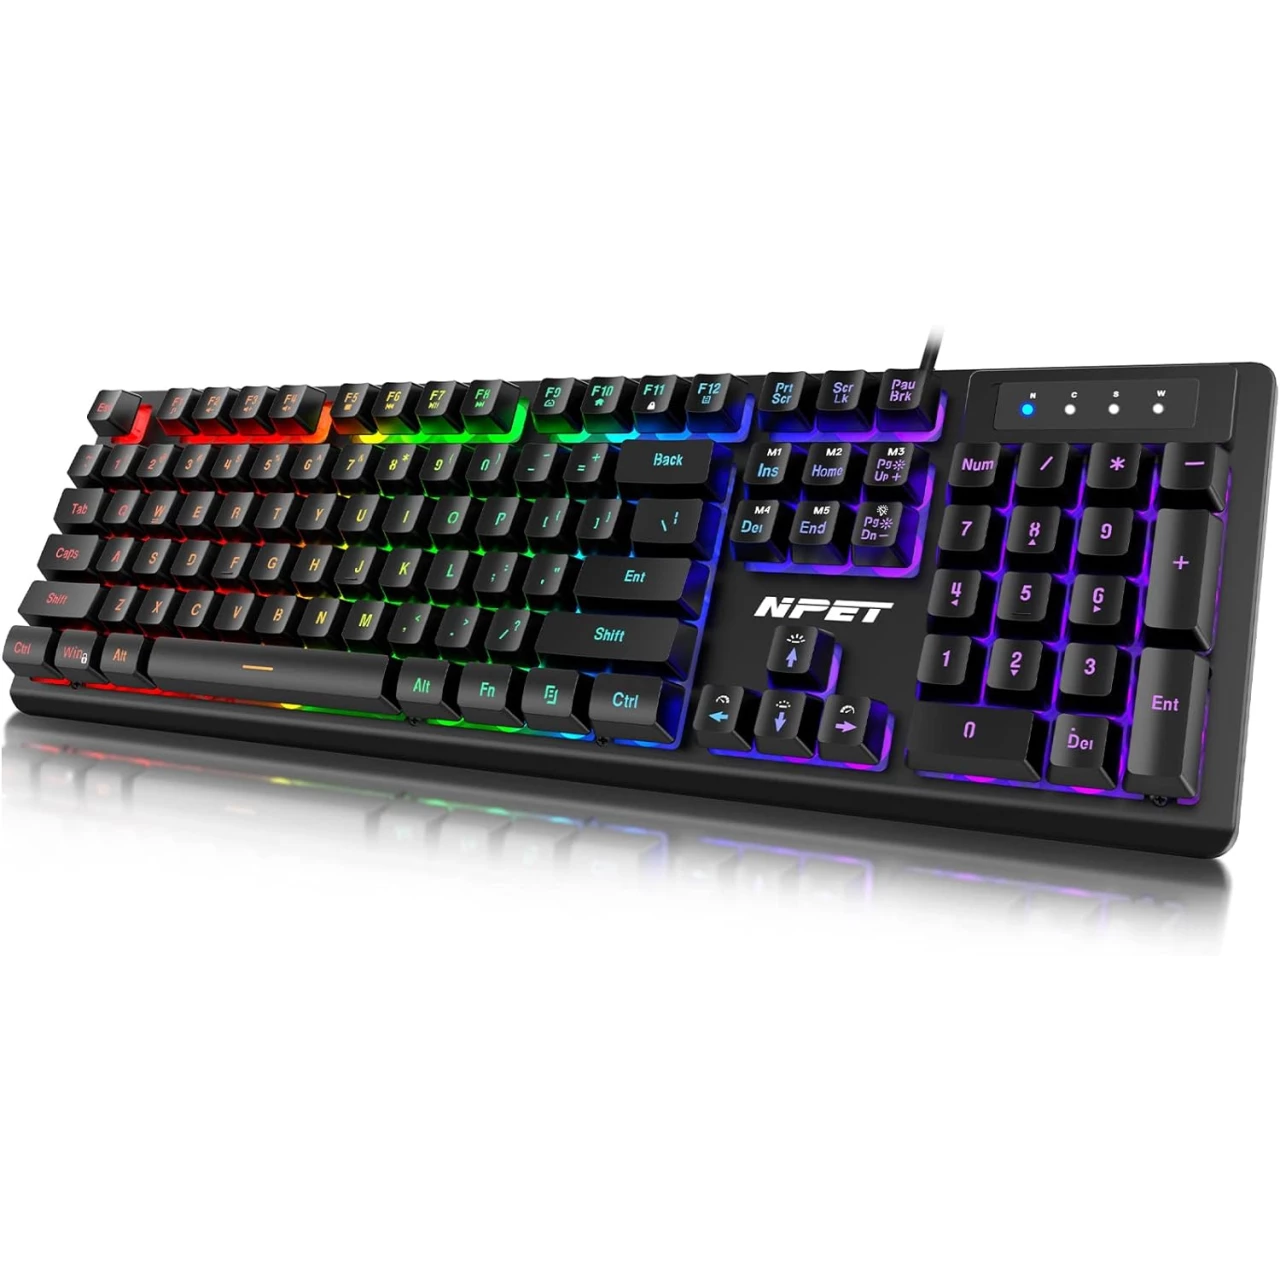 NPET K10 Wired Gaming Keyboard, LED Backlit, Spill-Resistant Design, Multimedia Keys, Quiet Silent USB Membrane Keyboard for Desktop, Computer, PC (Black)